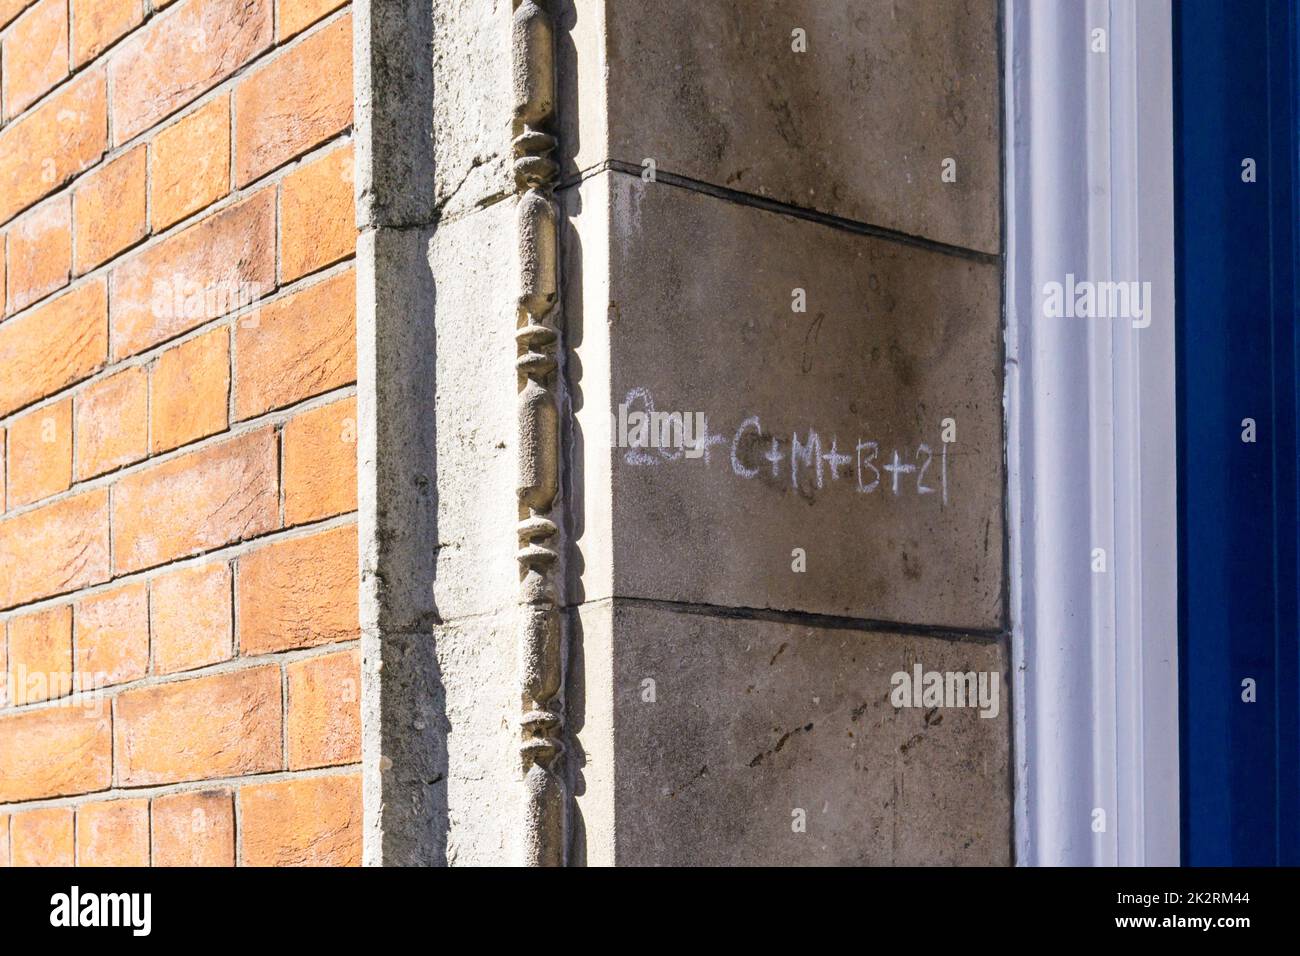 La bénédiction chrétienne 20+C+M+B+21 a craché sur une porte à Londres. DÉTAILS DANS LA DESCRIPTION. Banque D'Images